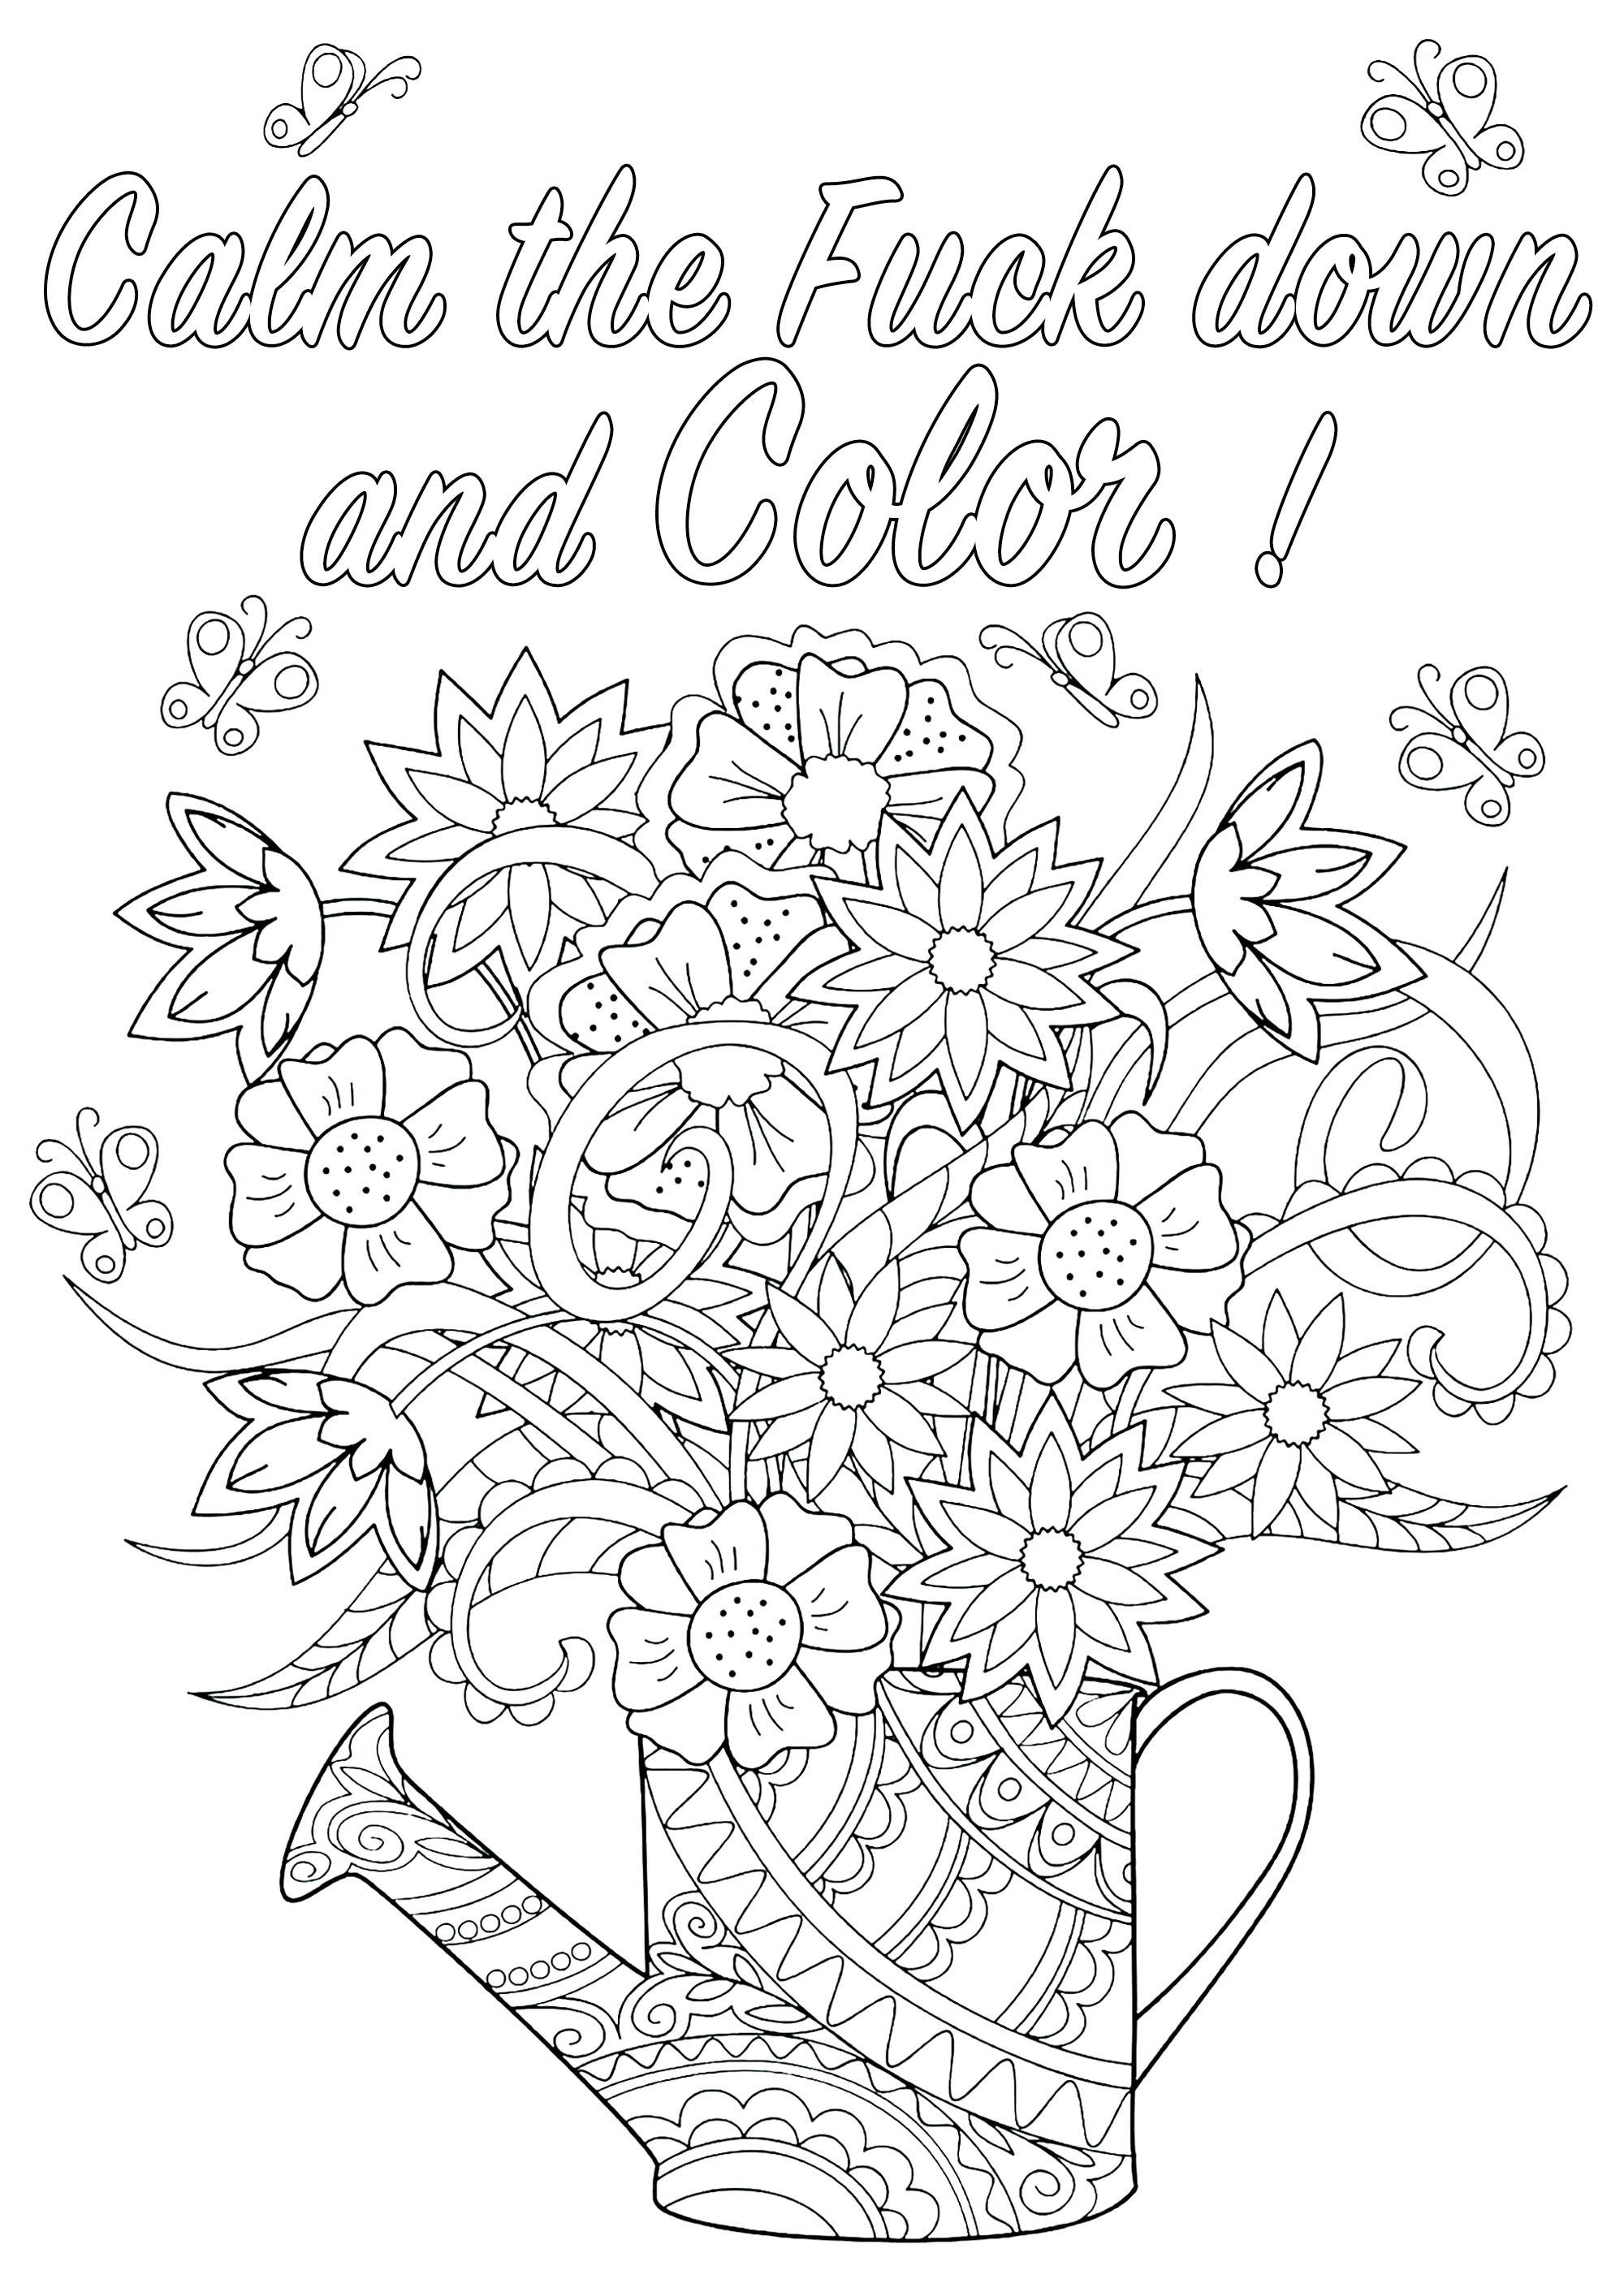 Calm the Fuck down and Color : Schimpfwort-Malvorlage mit Blumen in einer Gießkanne